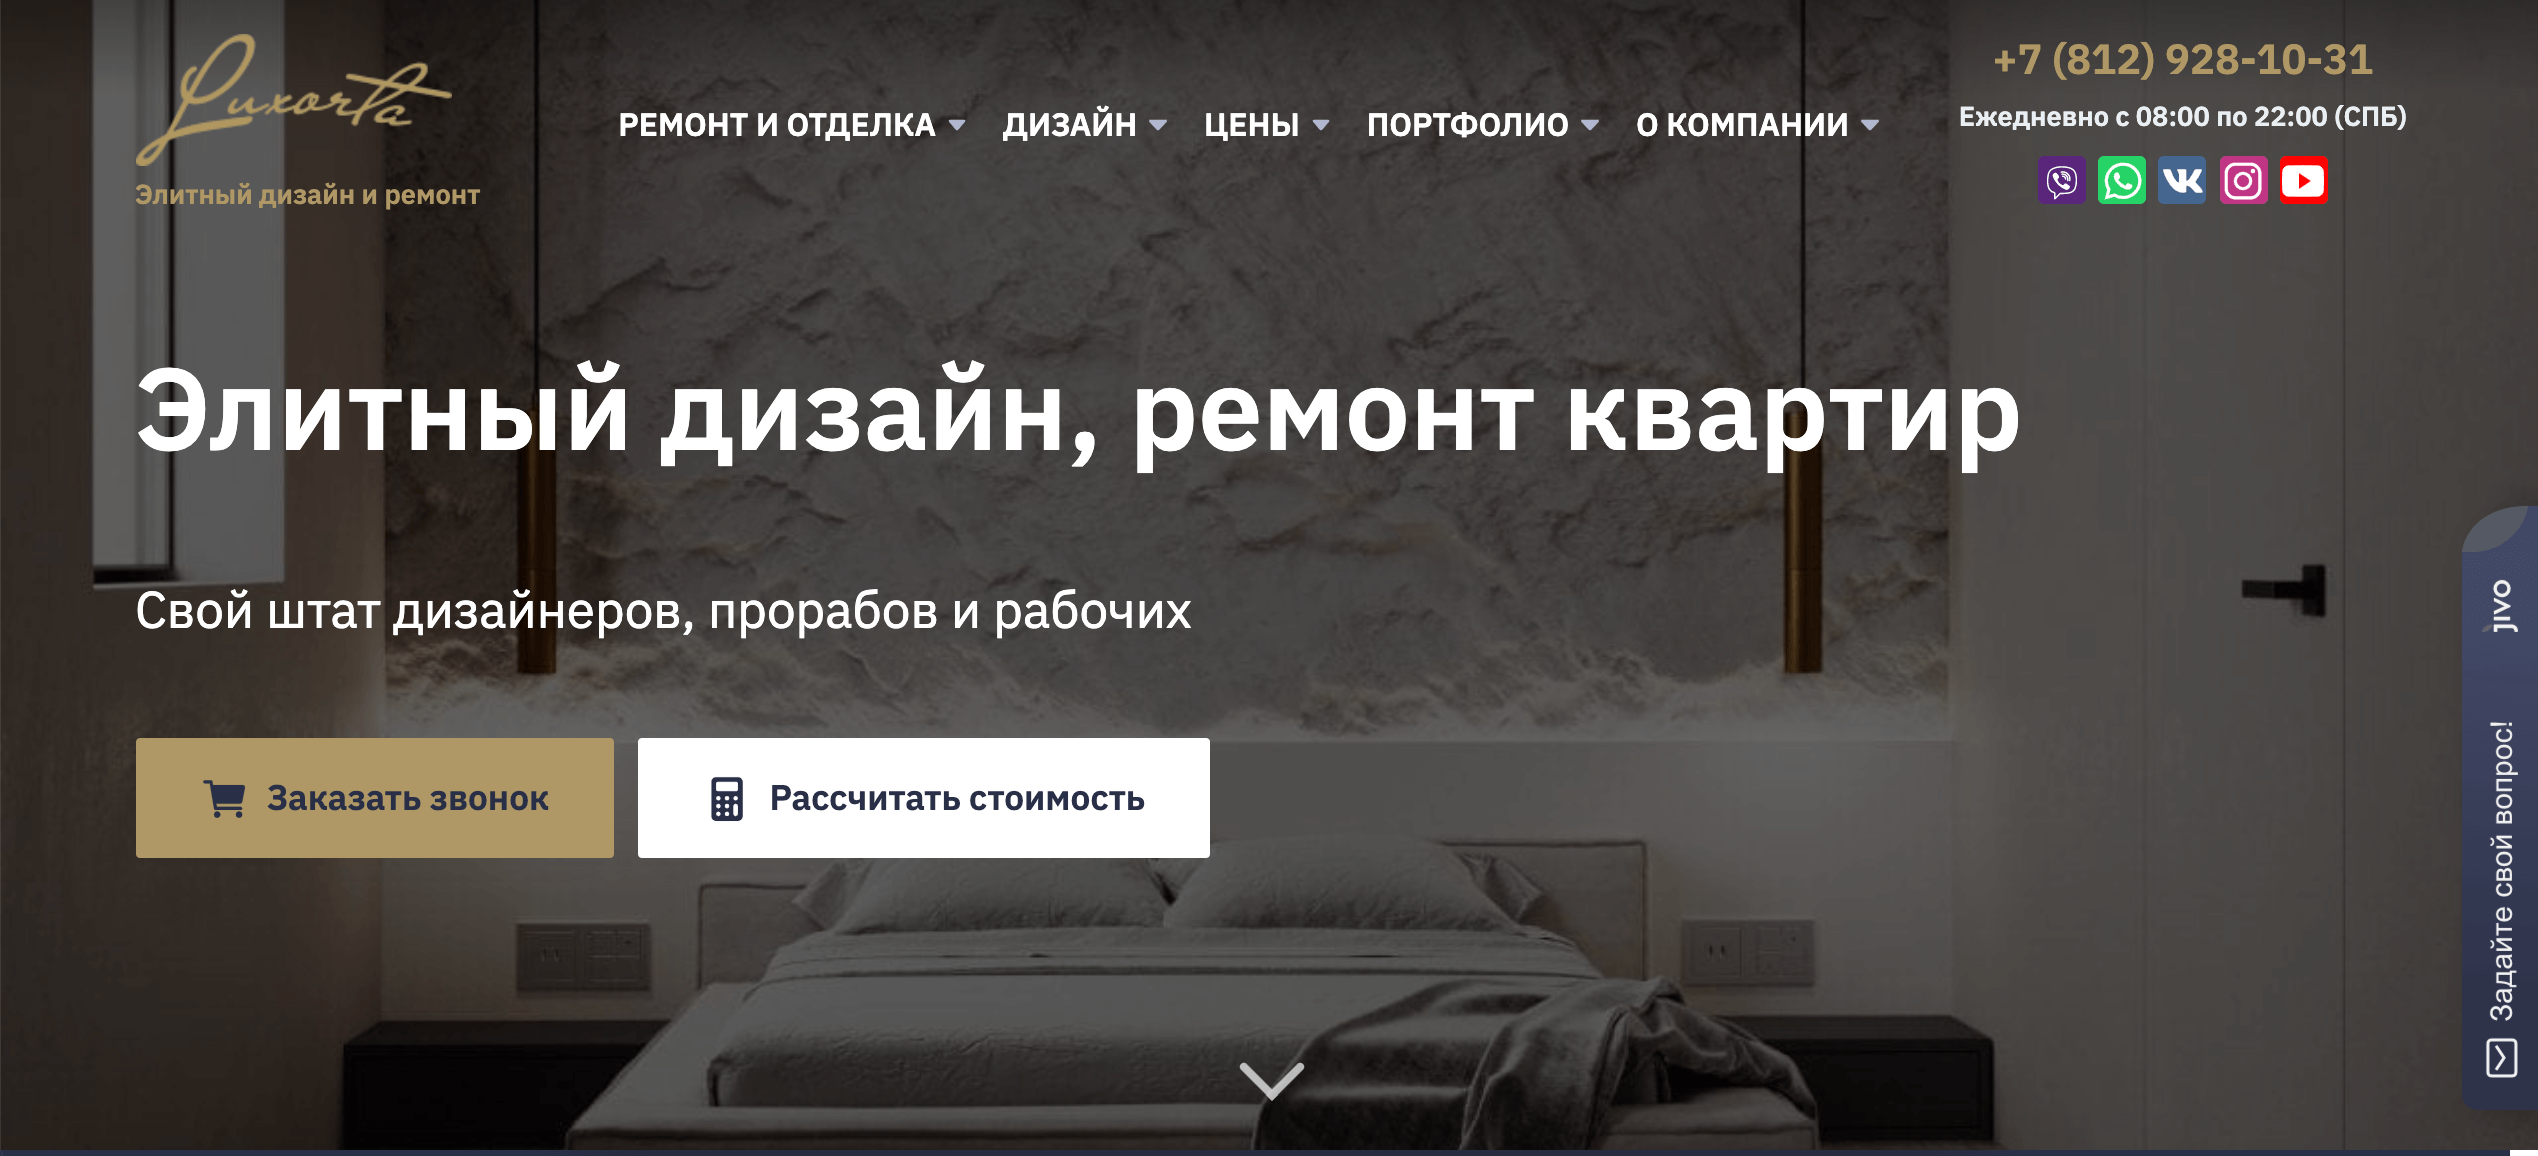 SEO продвижение сайта по элитному ремонту квартир в Санкт-Петербурге